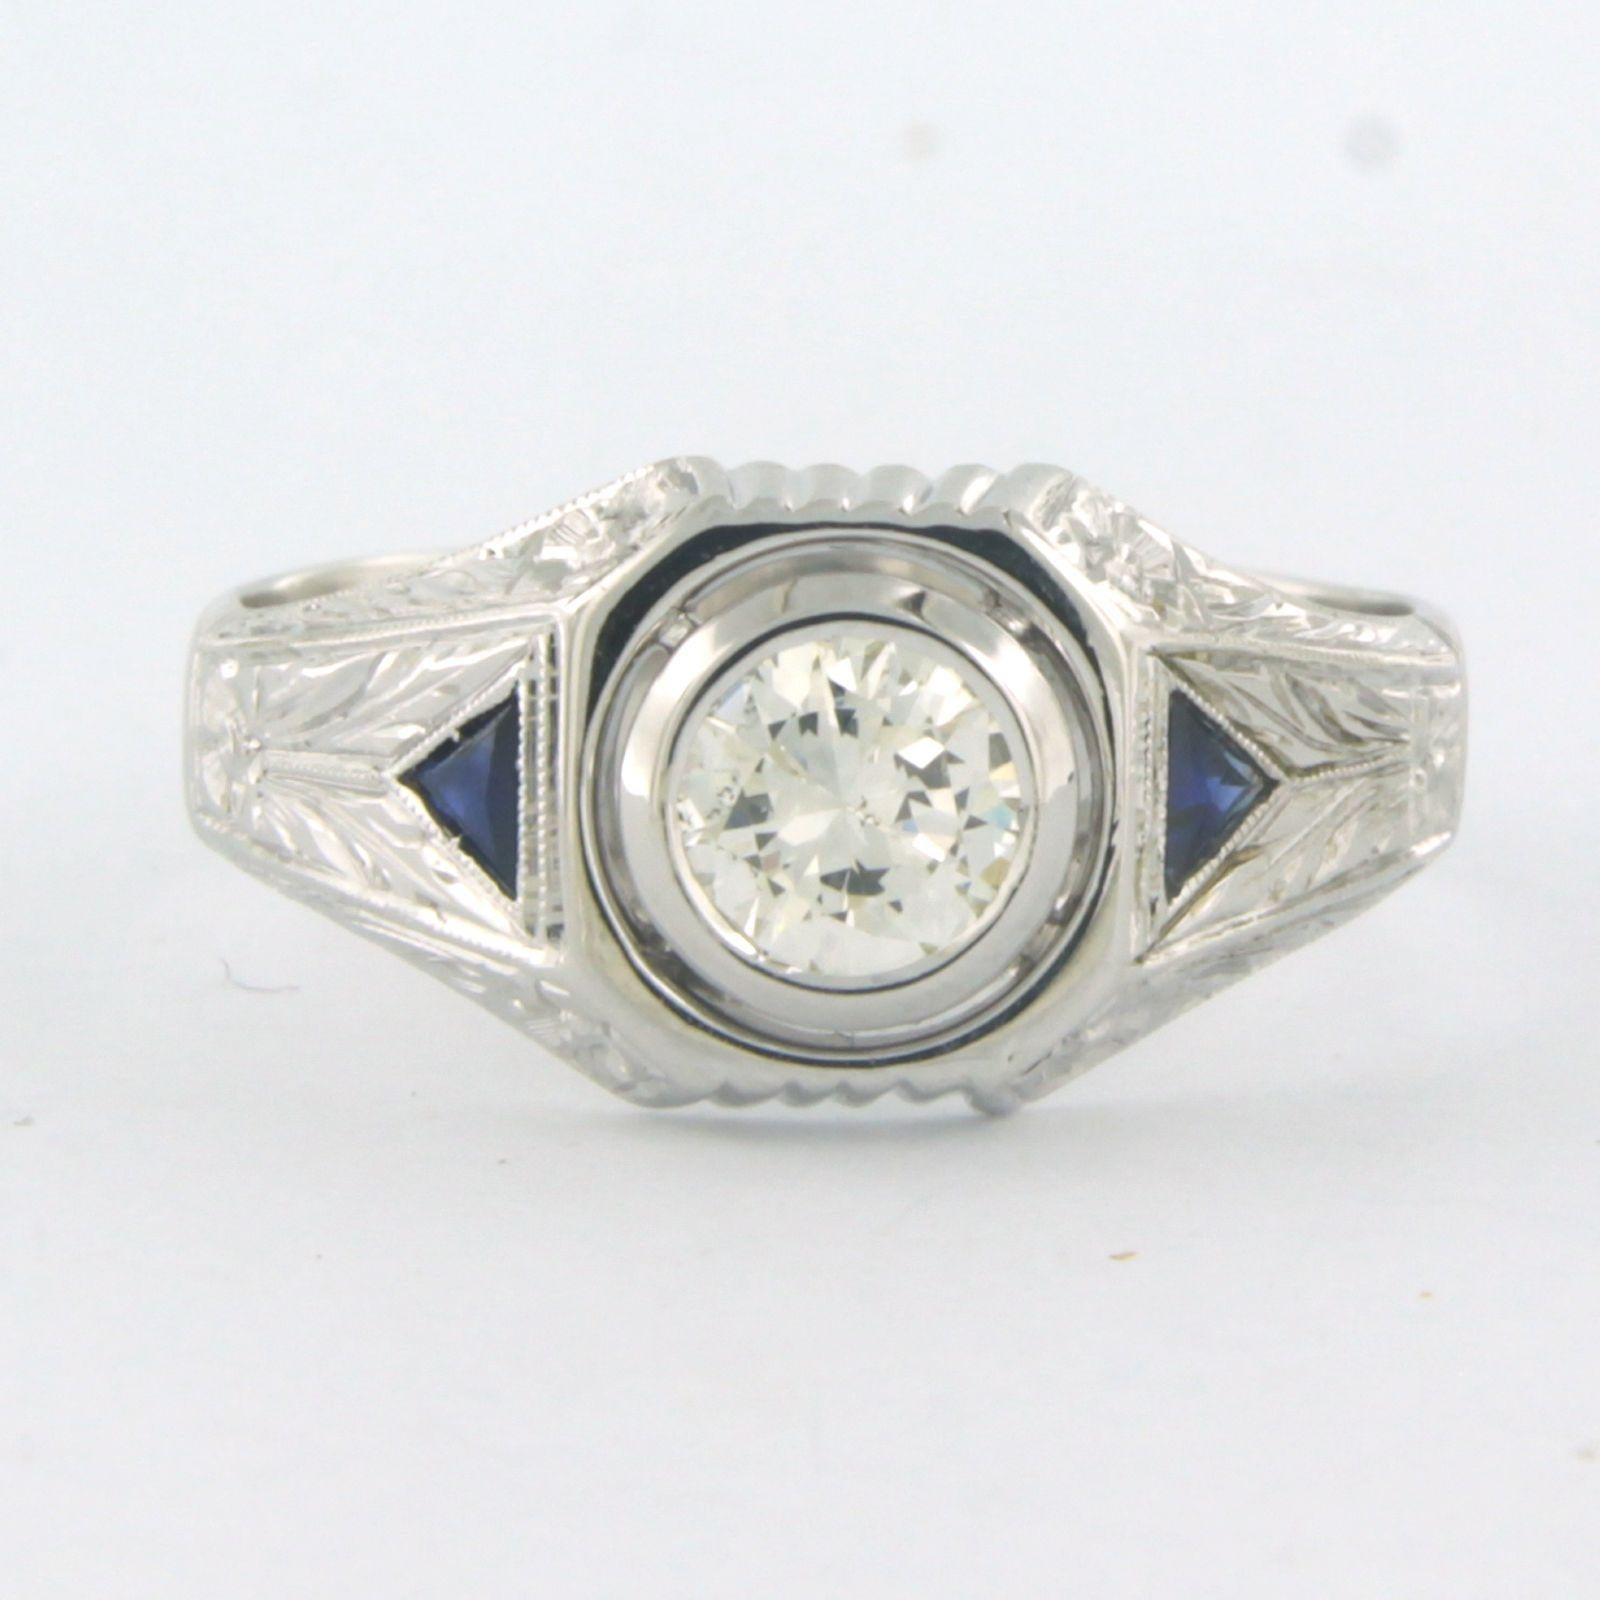 Ring aus 14 Karat Weißgold, besetzt mit einem Saphir und einem Diamanten im Brillantschliff. 0,75ct - K/L - SI - Ringgröße U.S. 11 - EU. 20.5(64)

detaillierte Beschreibung:

Die Spitze des Rings ist 1,0 cm breit und 3,8 mm hoch.

Ringgröße U.S. 11